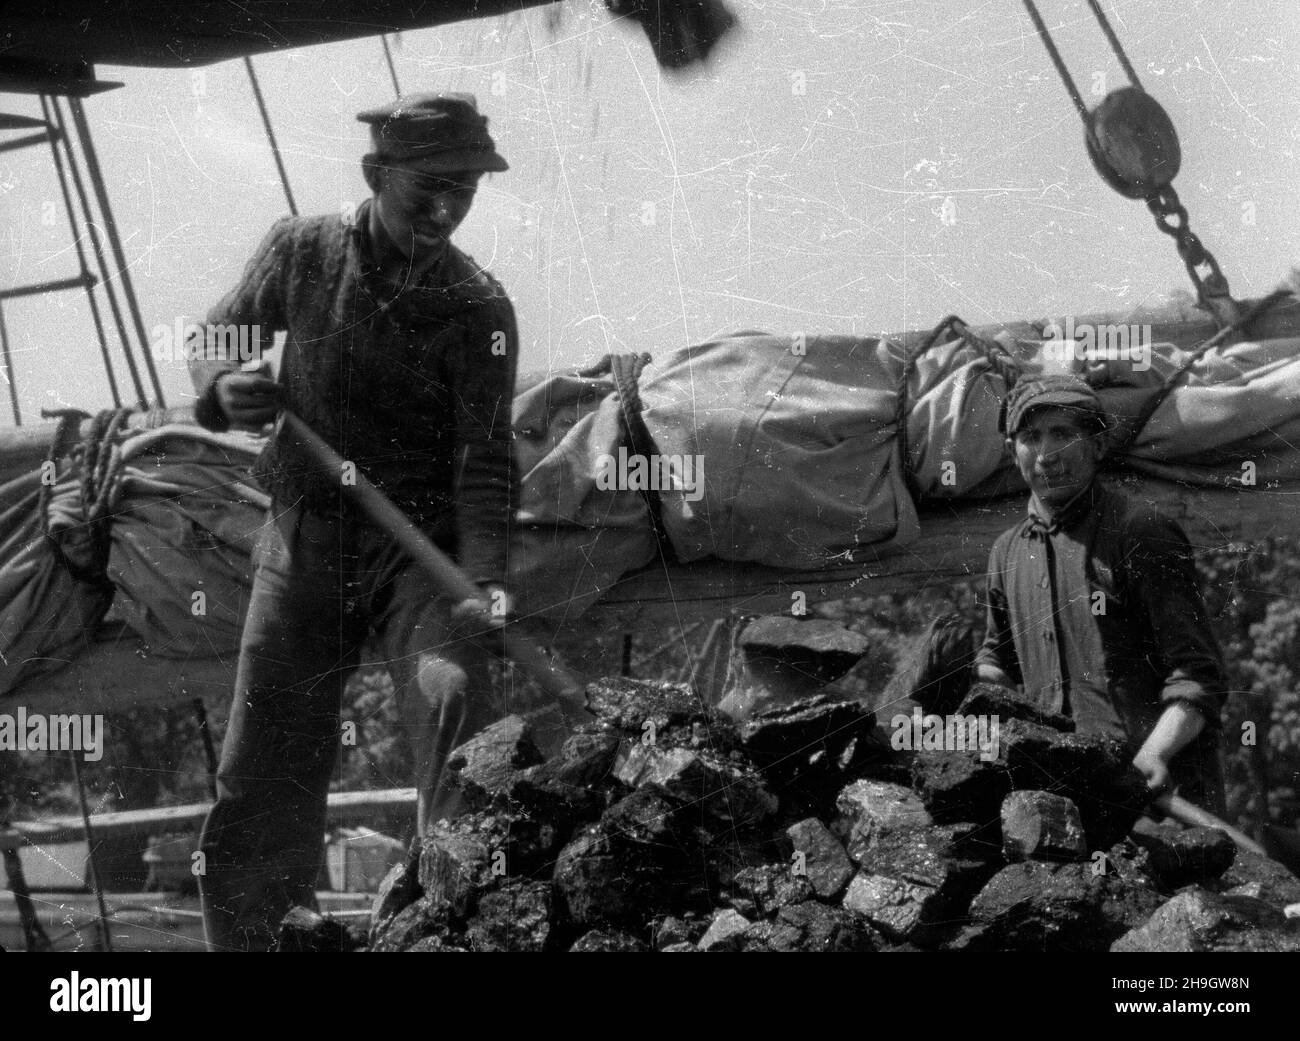 Ko³obrzeg, 1948-07. Prze³adunek wêgla w porcie. mw  PAP    Dok³adny dzieñ wydarzenia nieustalony.      Kolobrzeg, July 1948. Coal trans-shipment in the port.  mw  PAP Stock Photo